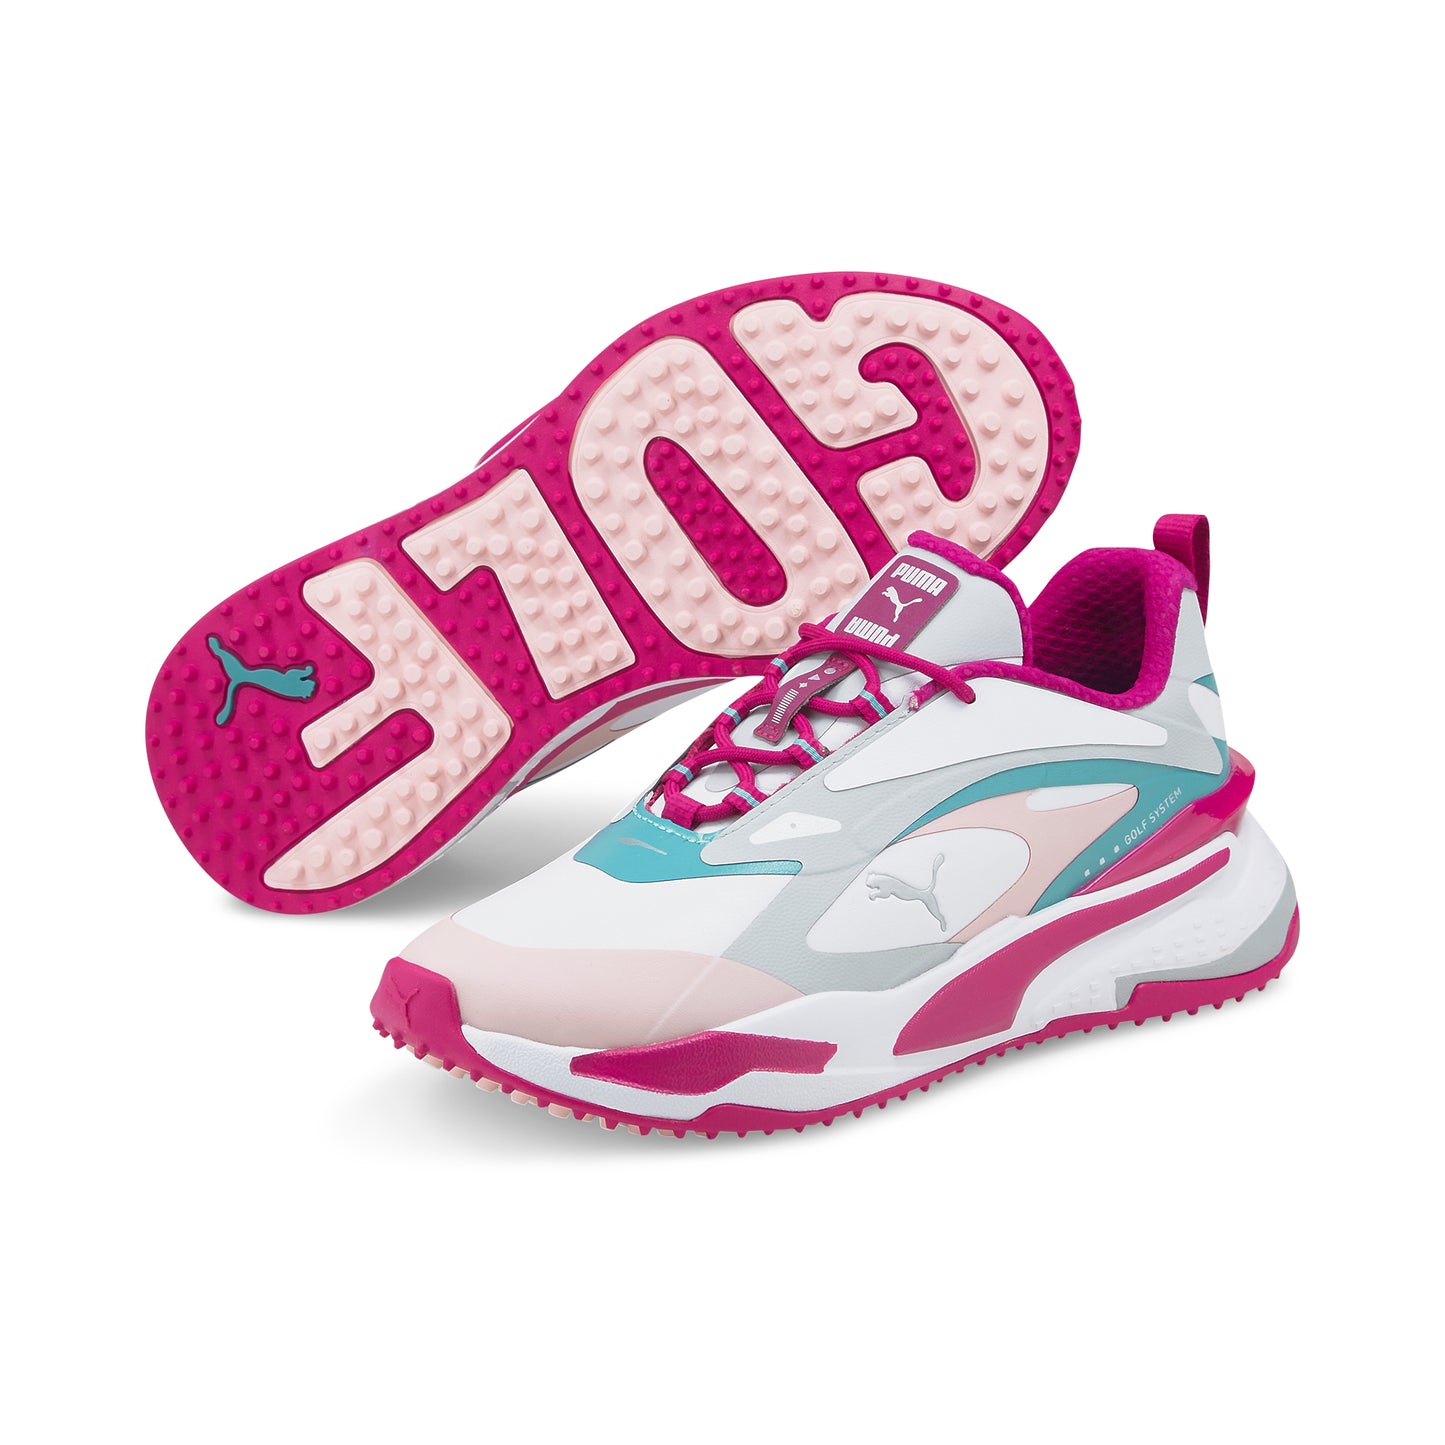 Shoes Spikeless GS-FAST PUMA Women\'s Golf Golf –